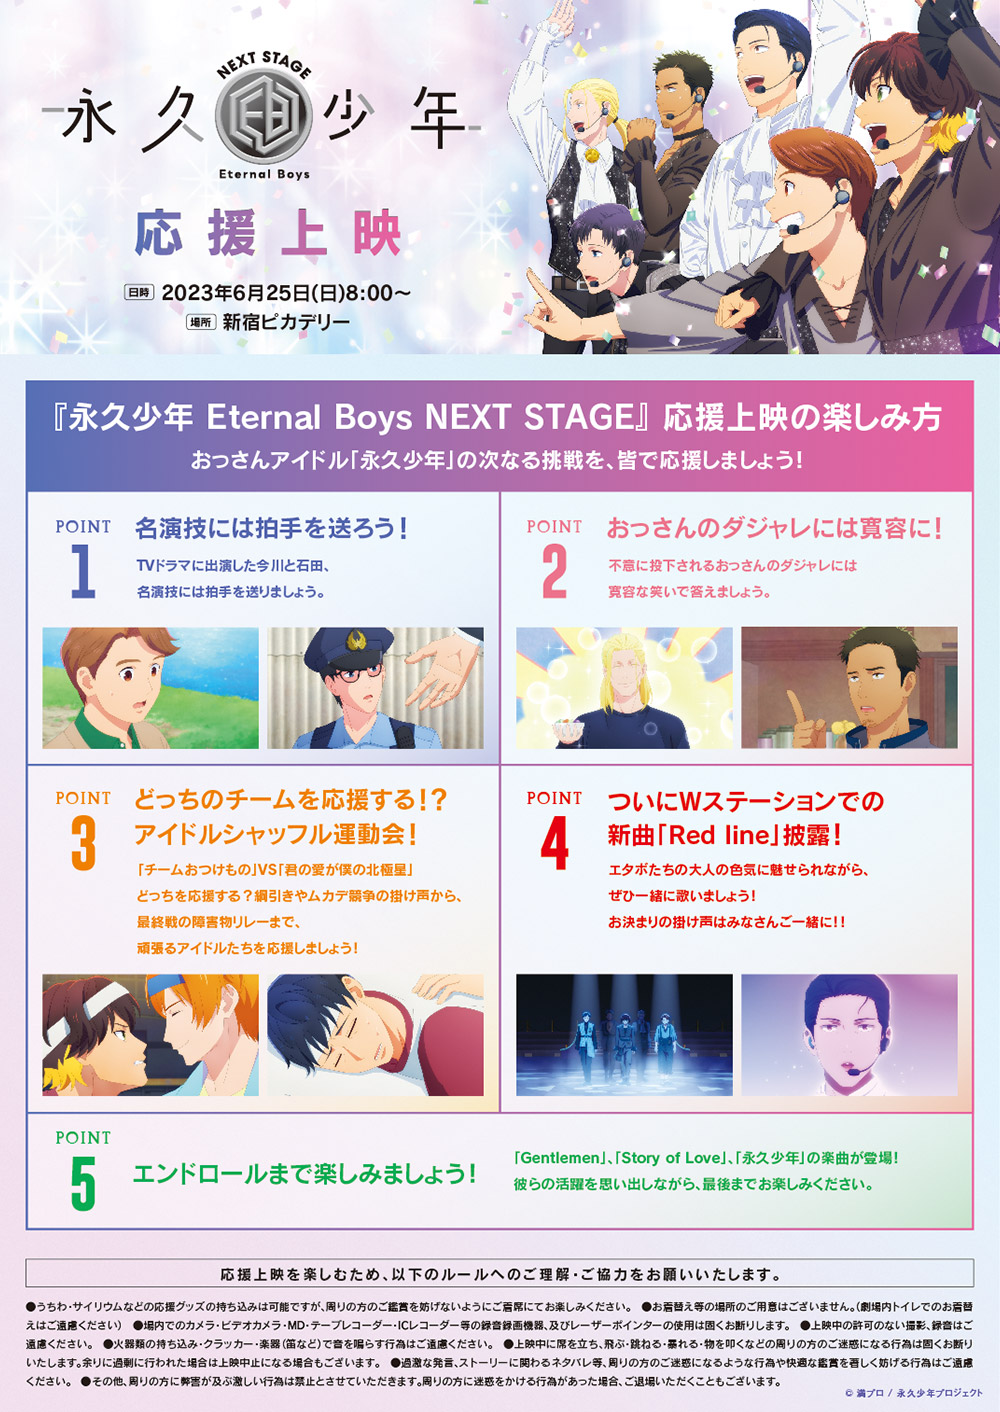 アニメ『永久少年 Eternal Boys』公式サイト